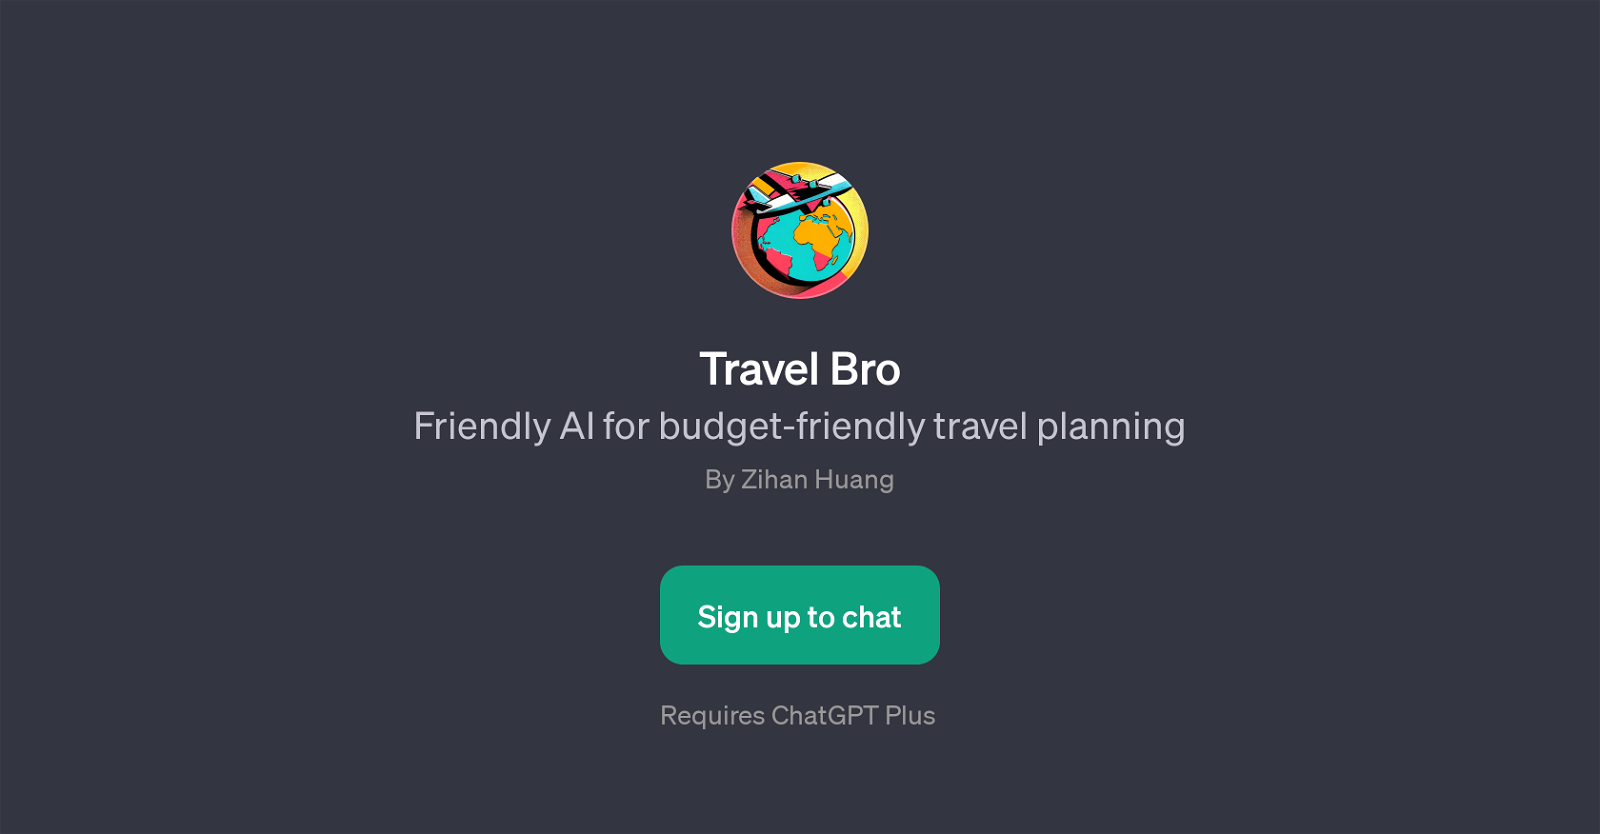 Travel Bro website